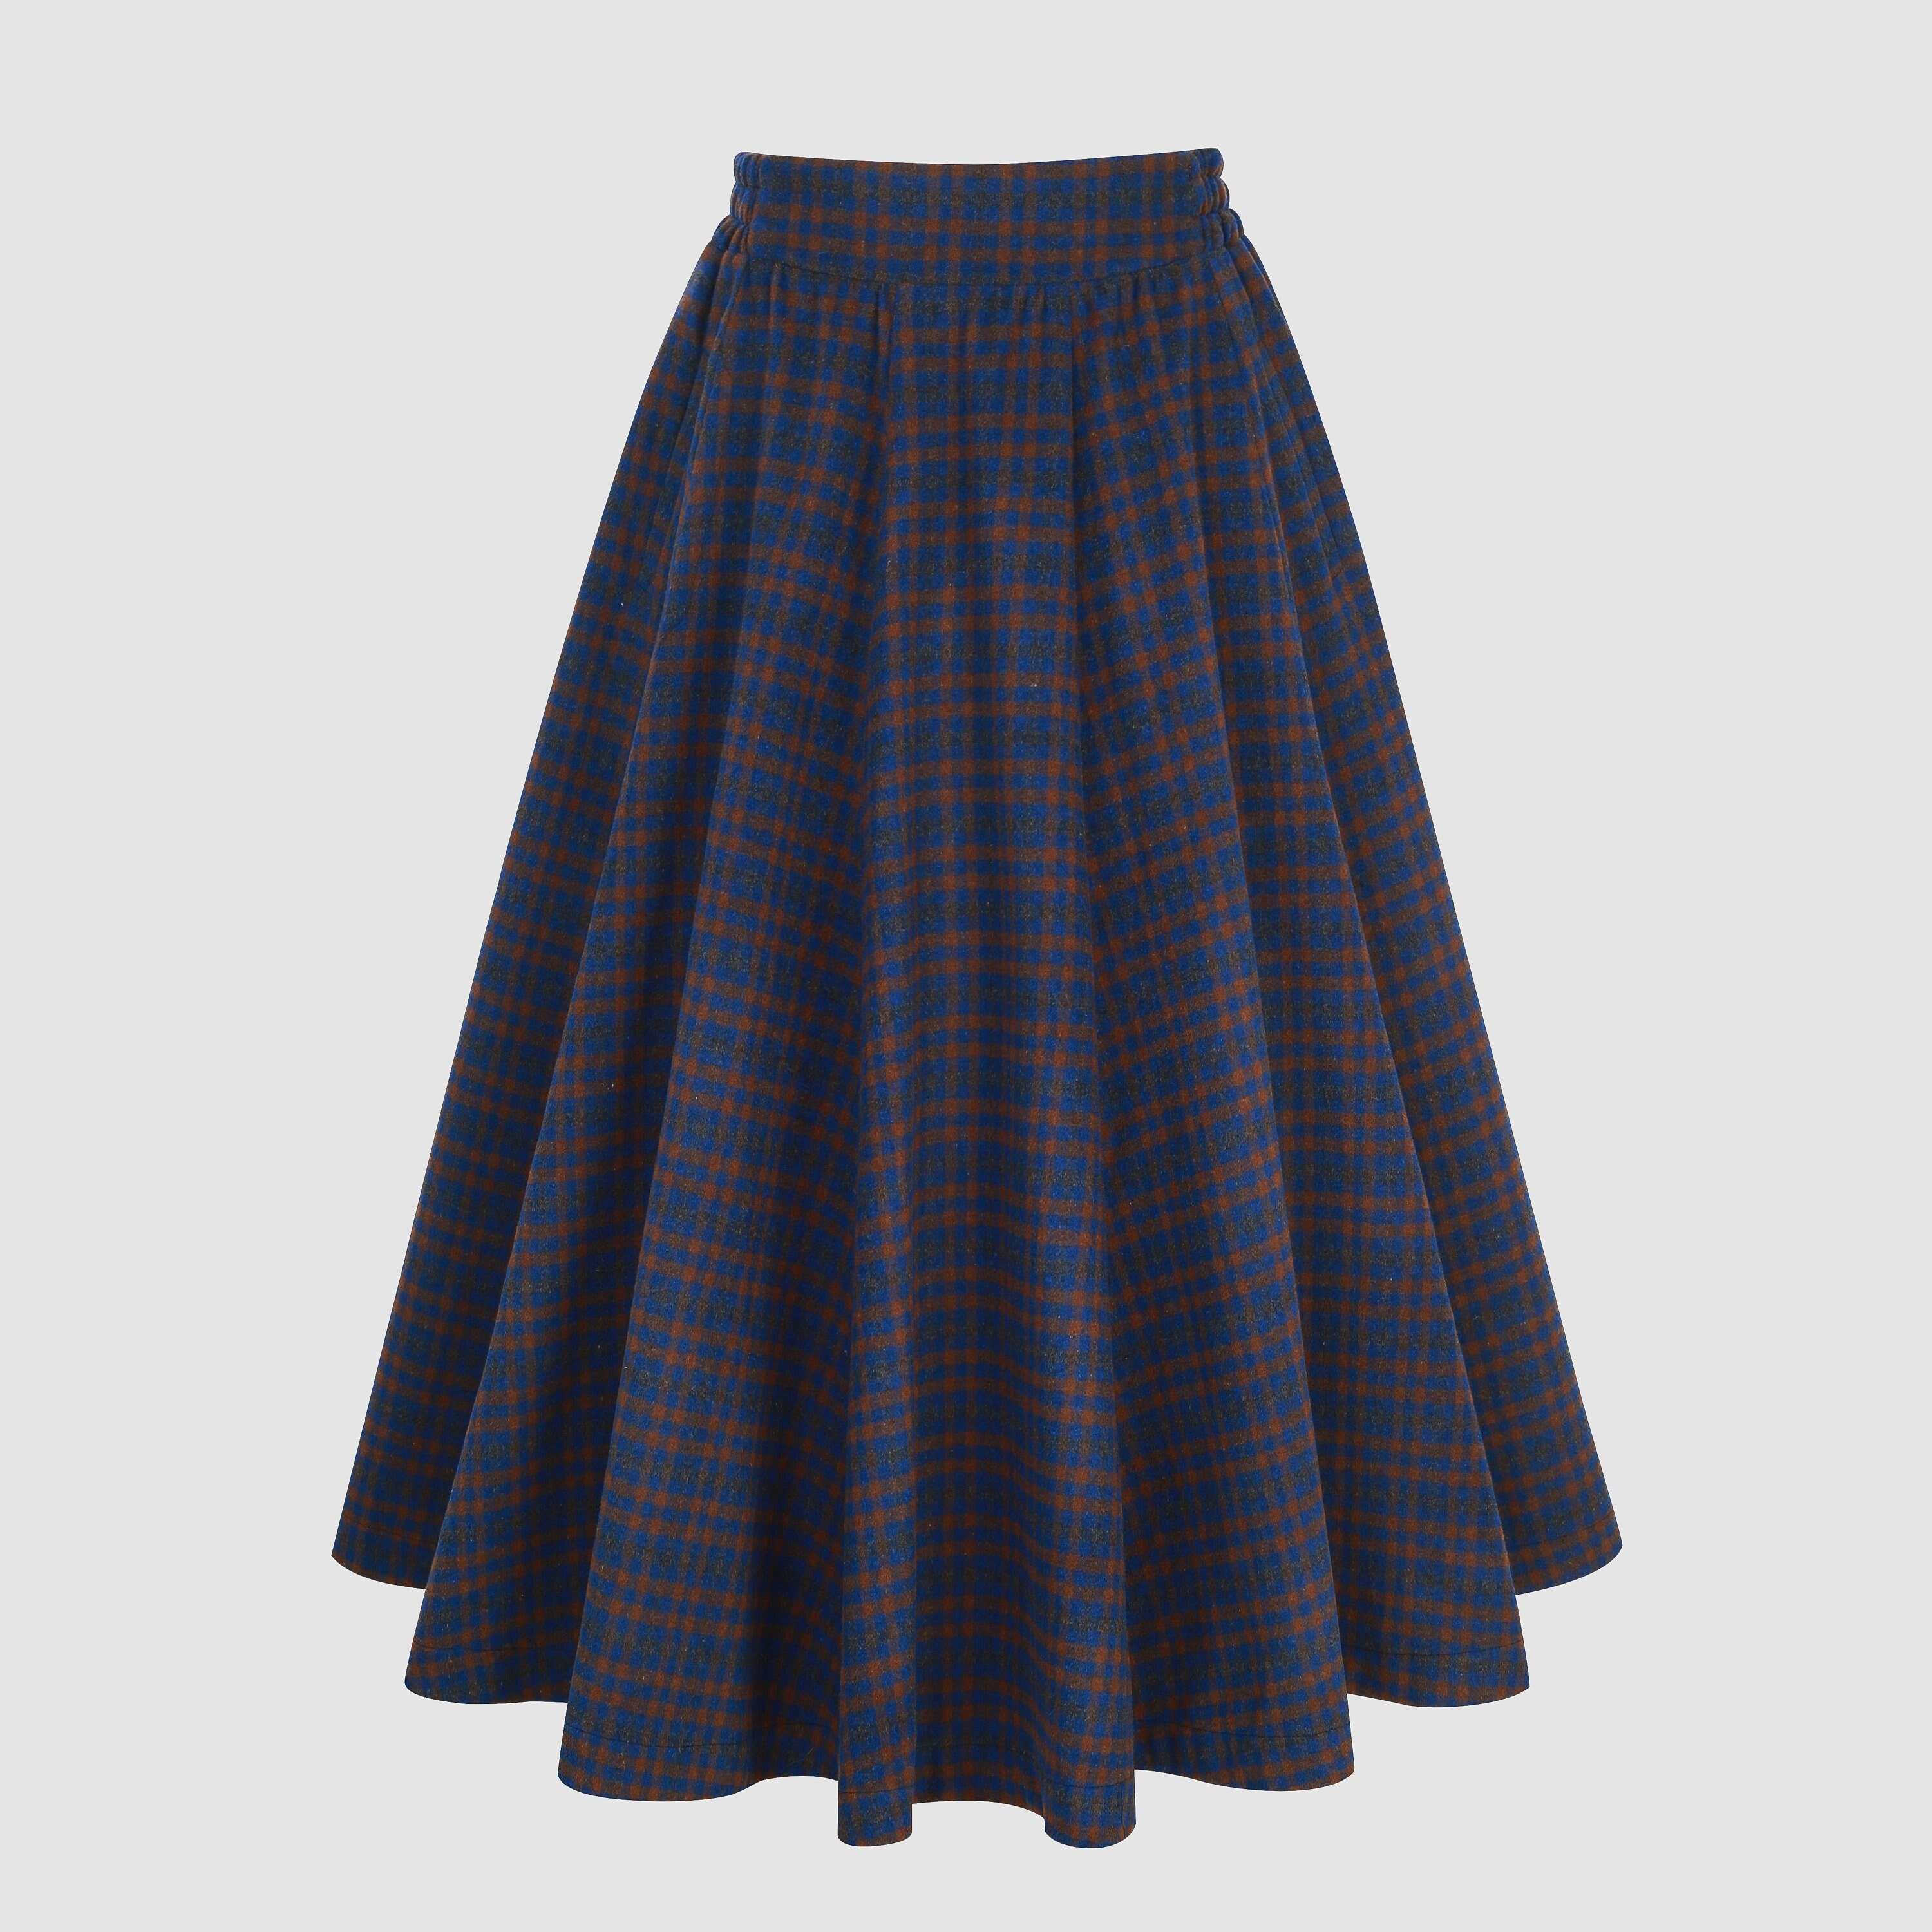 Tartan Wool Skirt in Blue Midi Wool Skirt Vintage Wool Plaid image